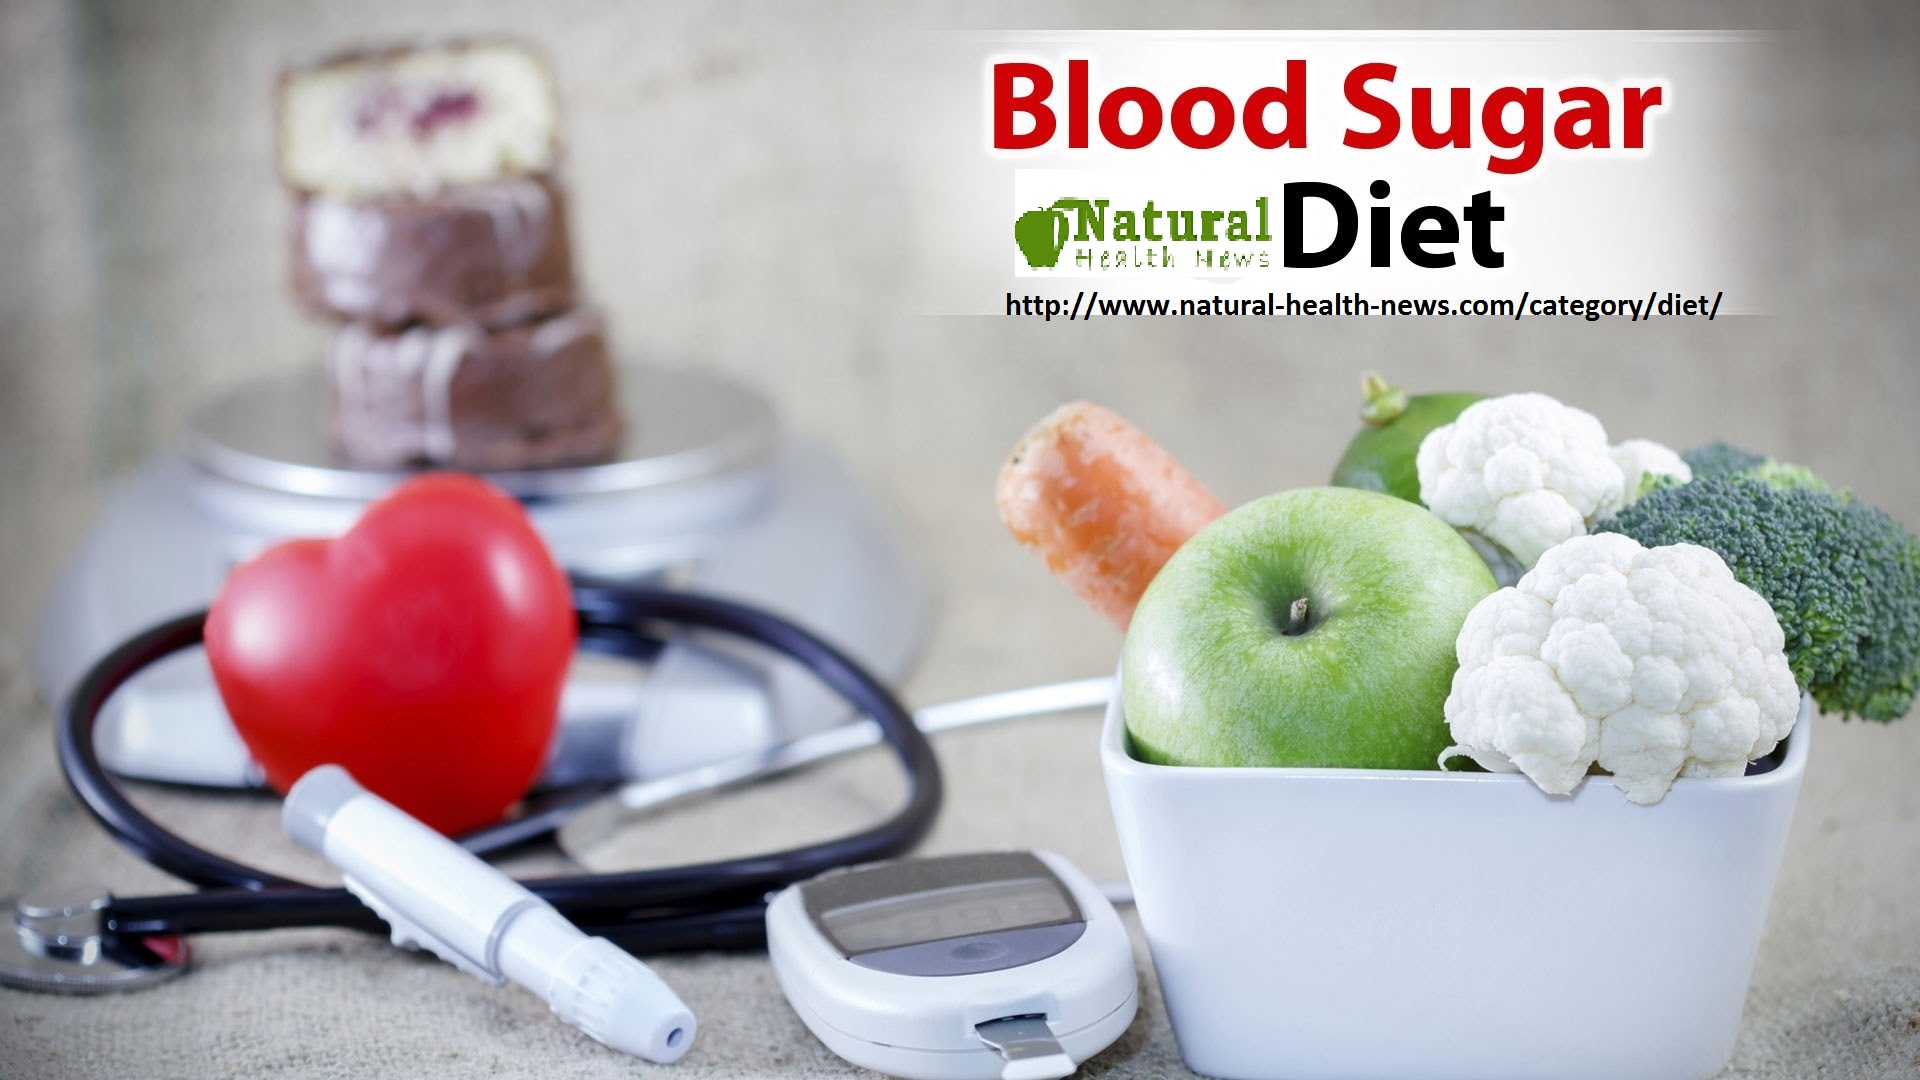 The Blood Sugar Diet